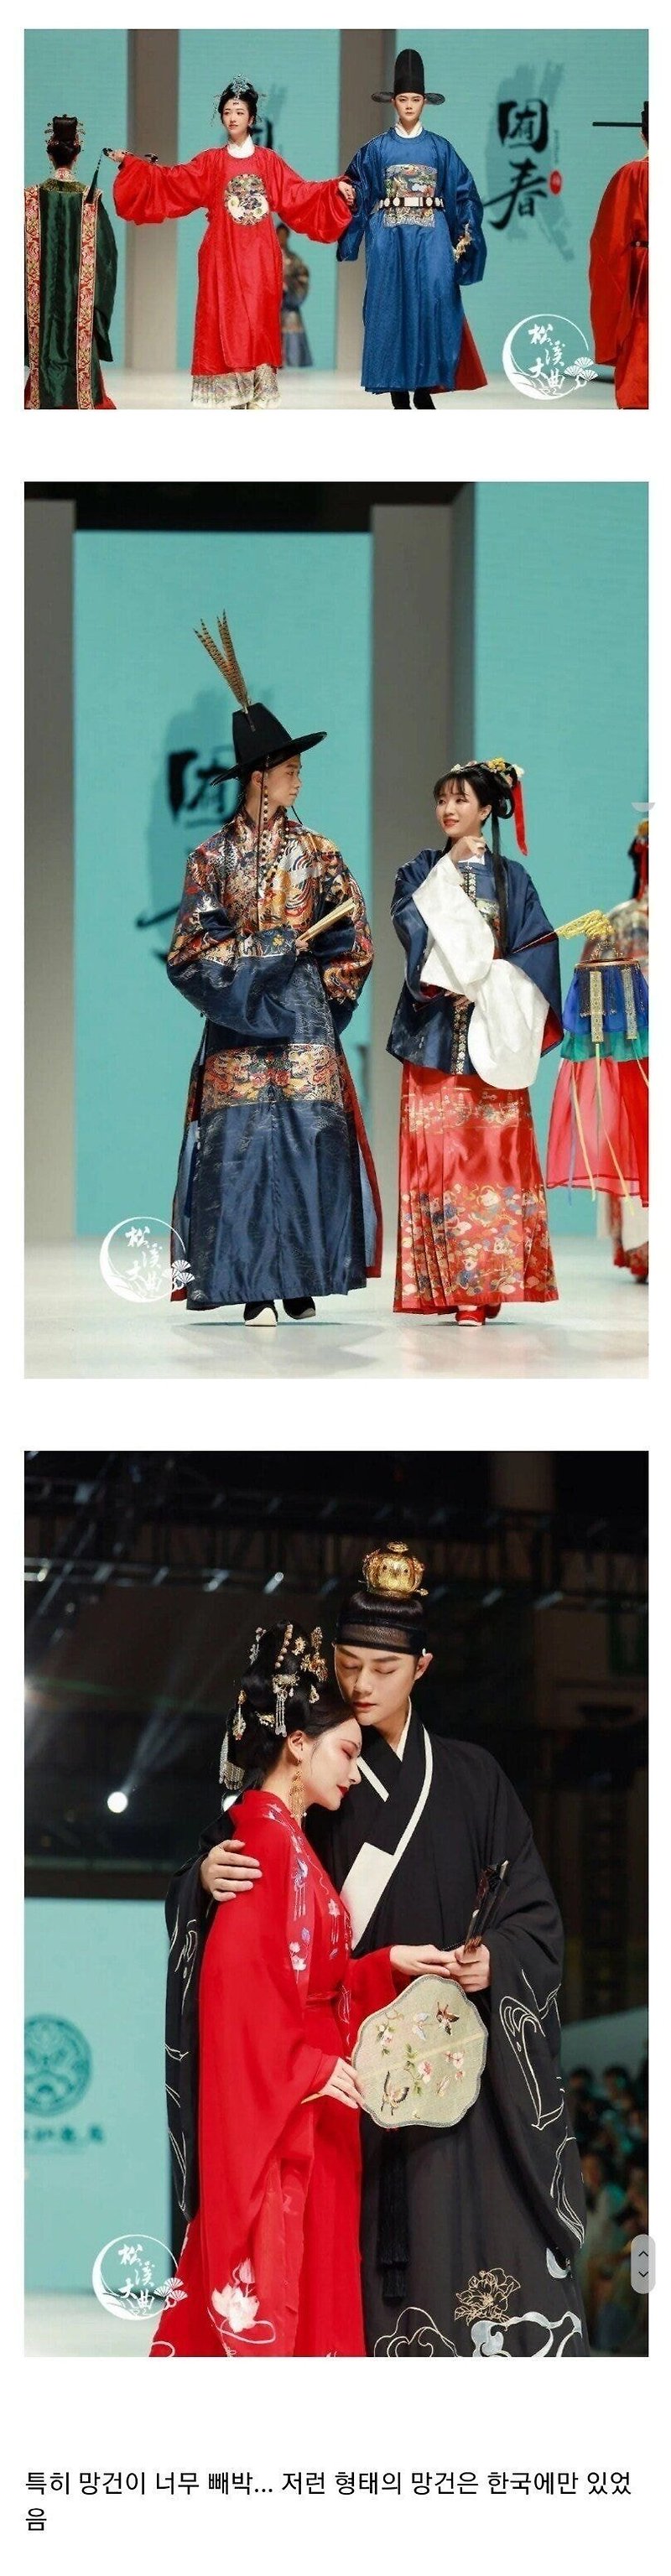 중국 전통복 패션쇼 근황